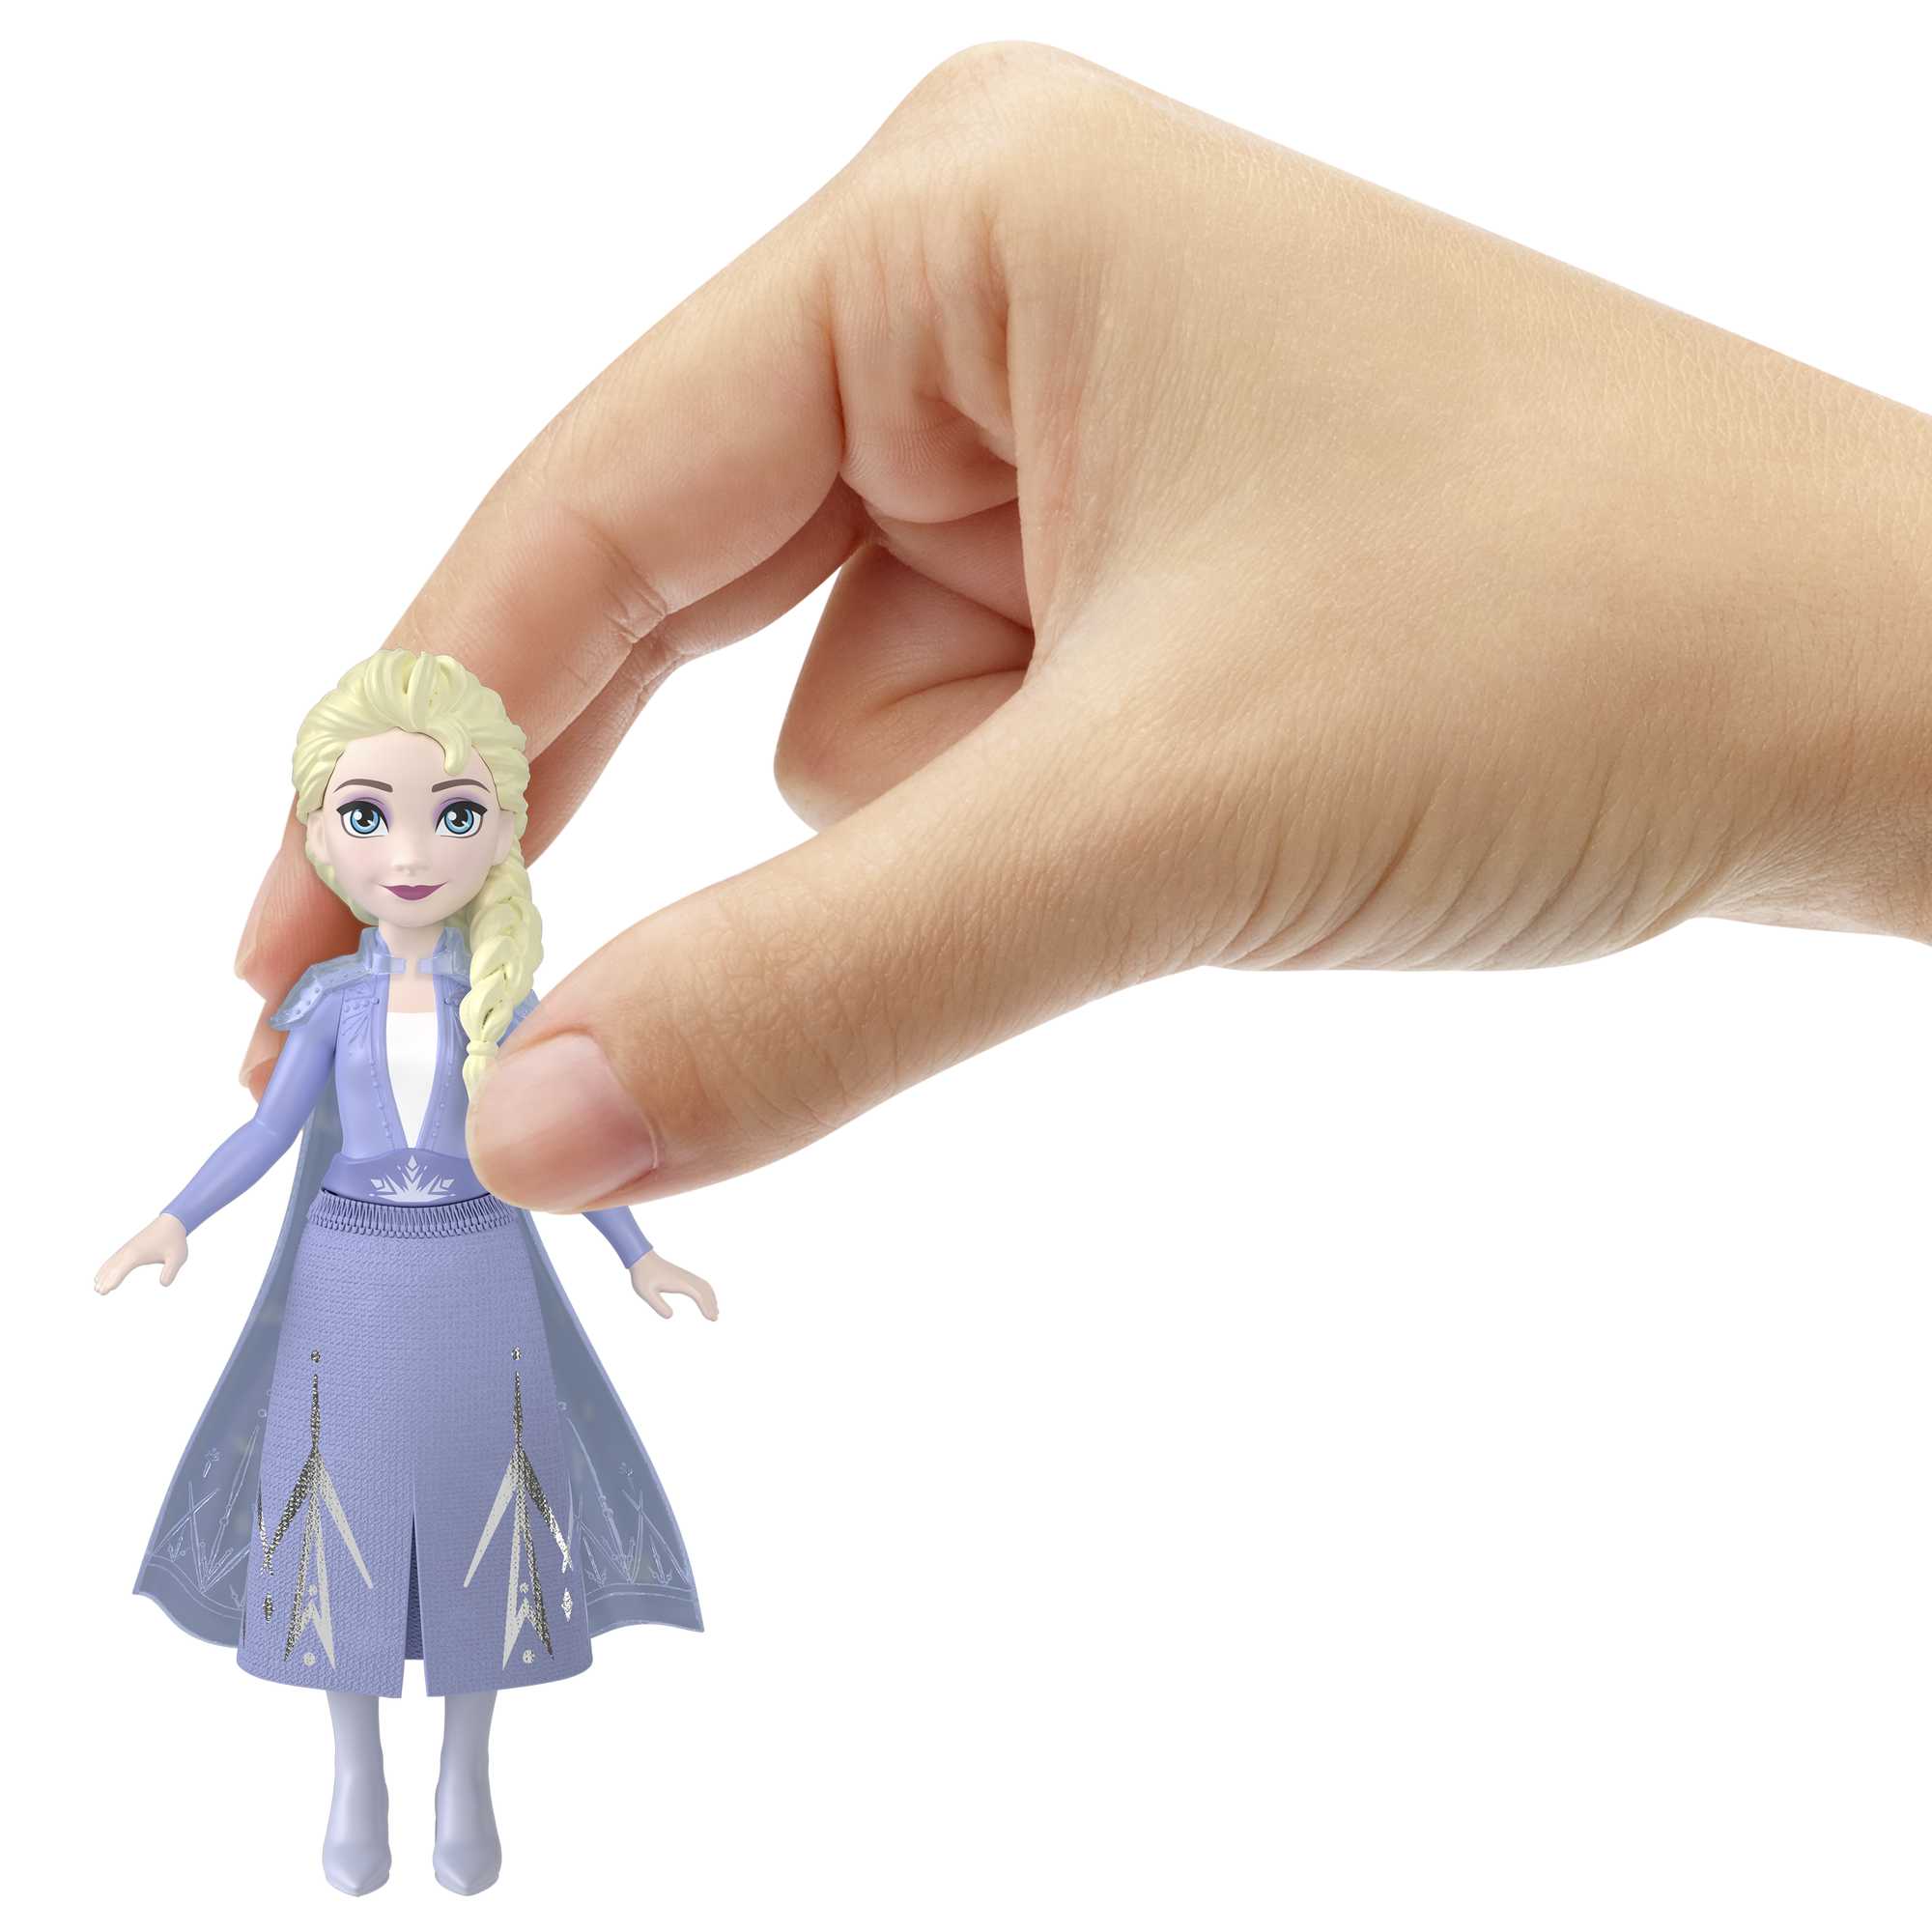 Boneca Frozen Elsa Brilhante Mattel com o Melhor Preço é no Zoom